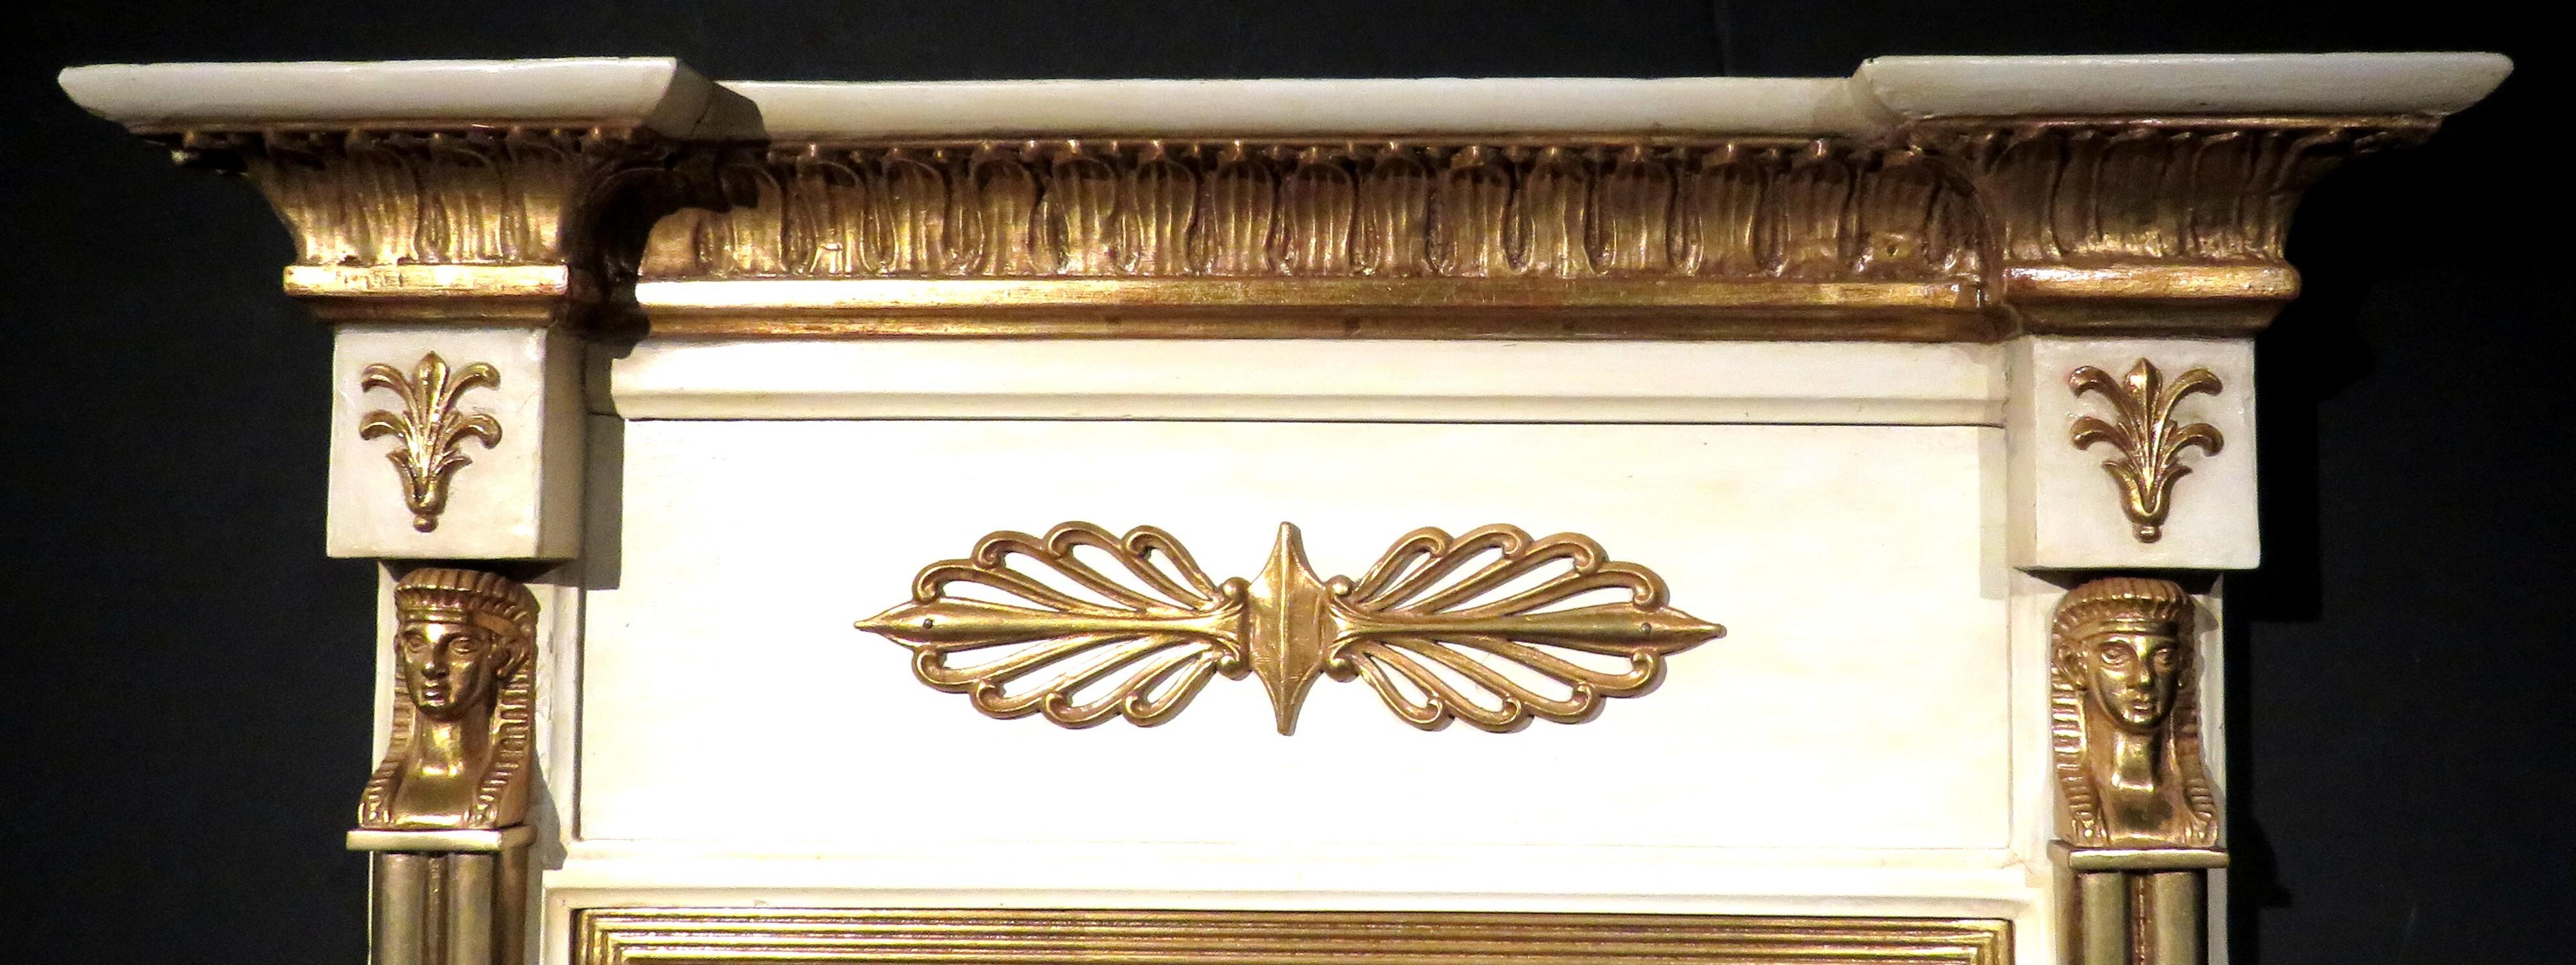 Très beau miroir console du début du 19ème siècle de la période Regency, peint en crème et doré. Le cadre présente une corniche architecturale dorée en surplomb surmontant un motif d'anthemion doré appliqué, flanqué de chaque côté de chapiteaux